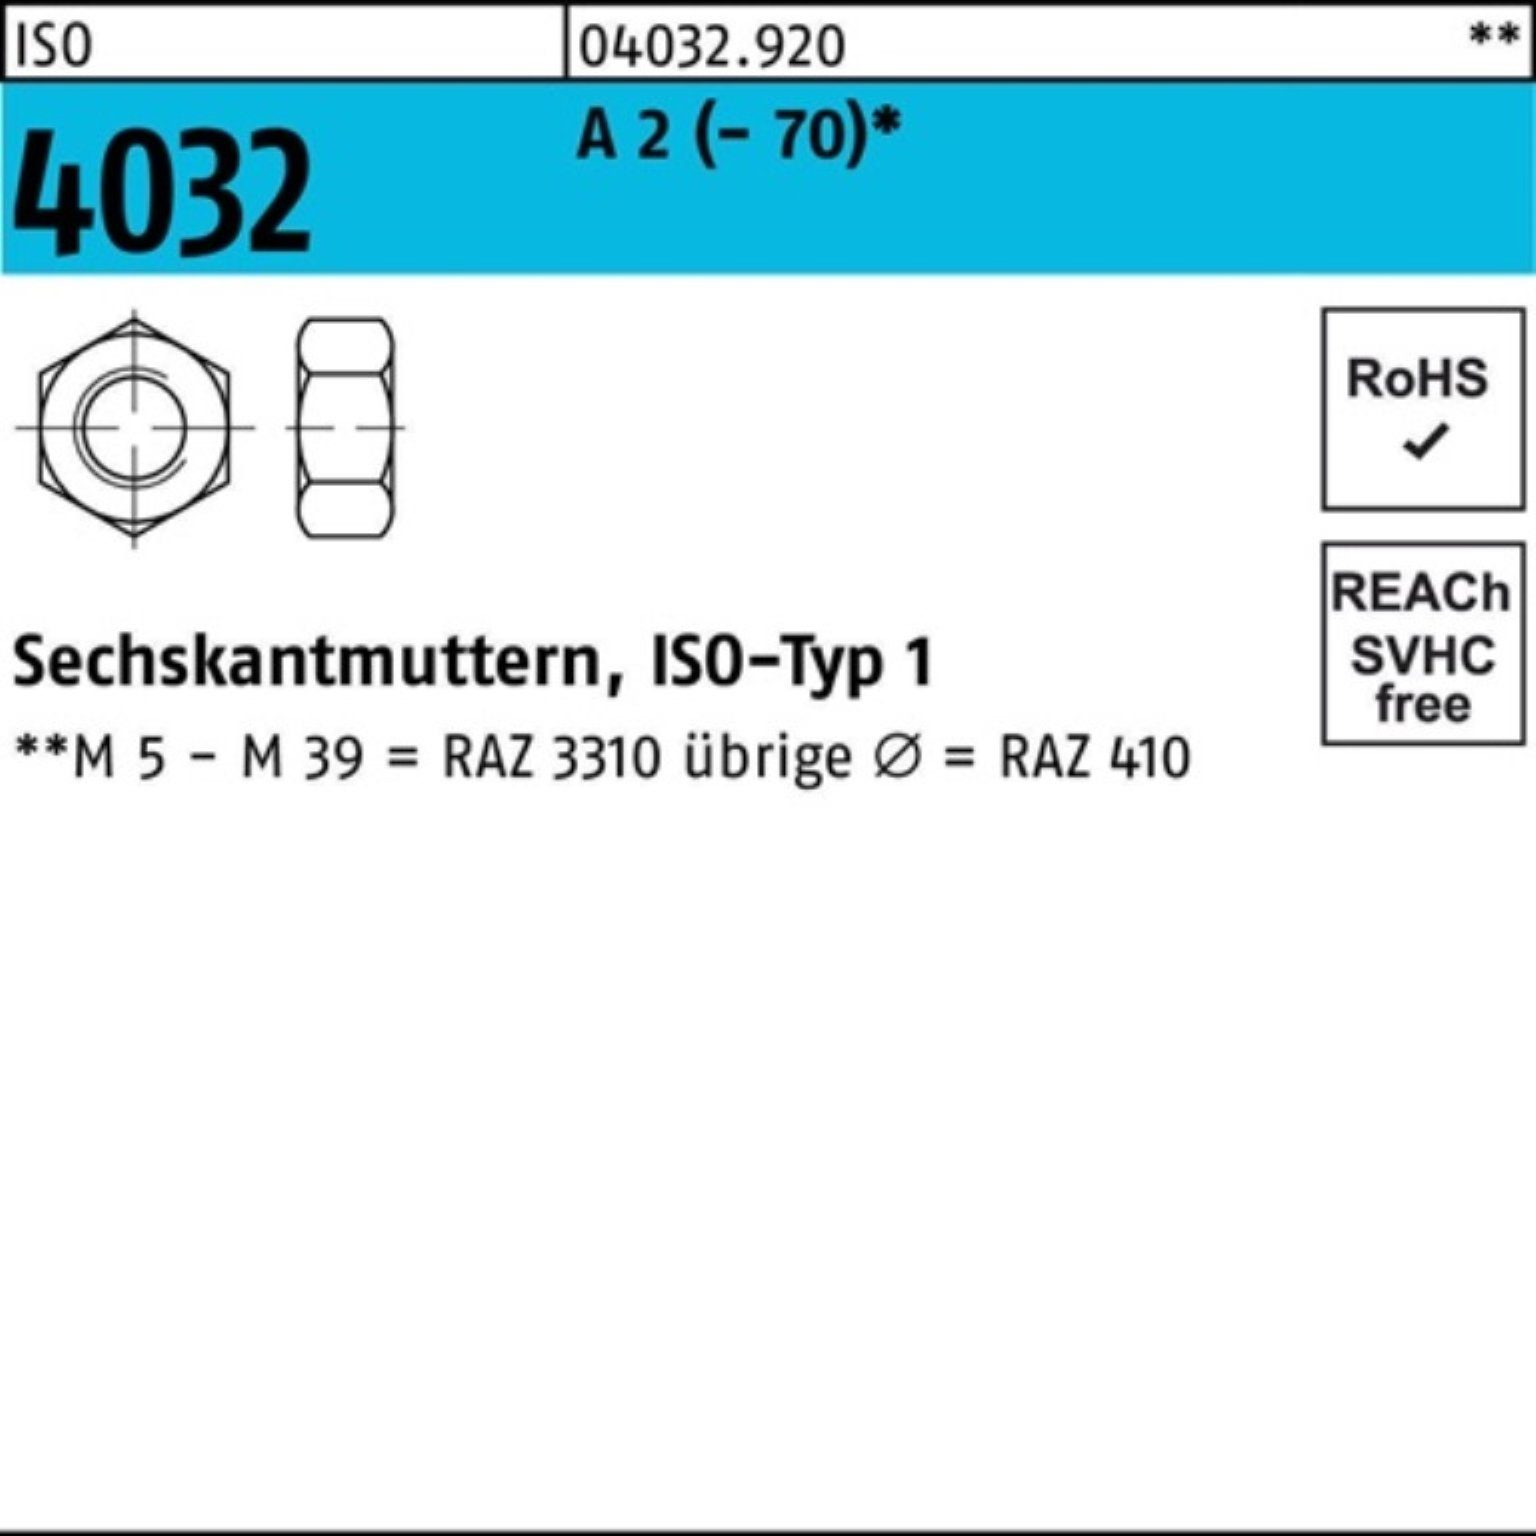 Muttern Pack 4032 2 2 4032 ISO Bufab - 5 A Stück Sechskantmutter 70 M36 ISO 100er A